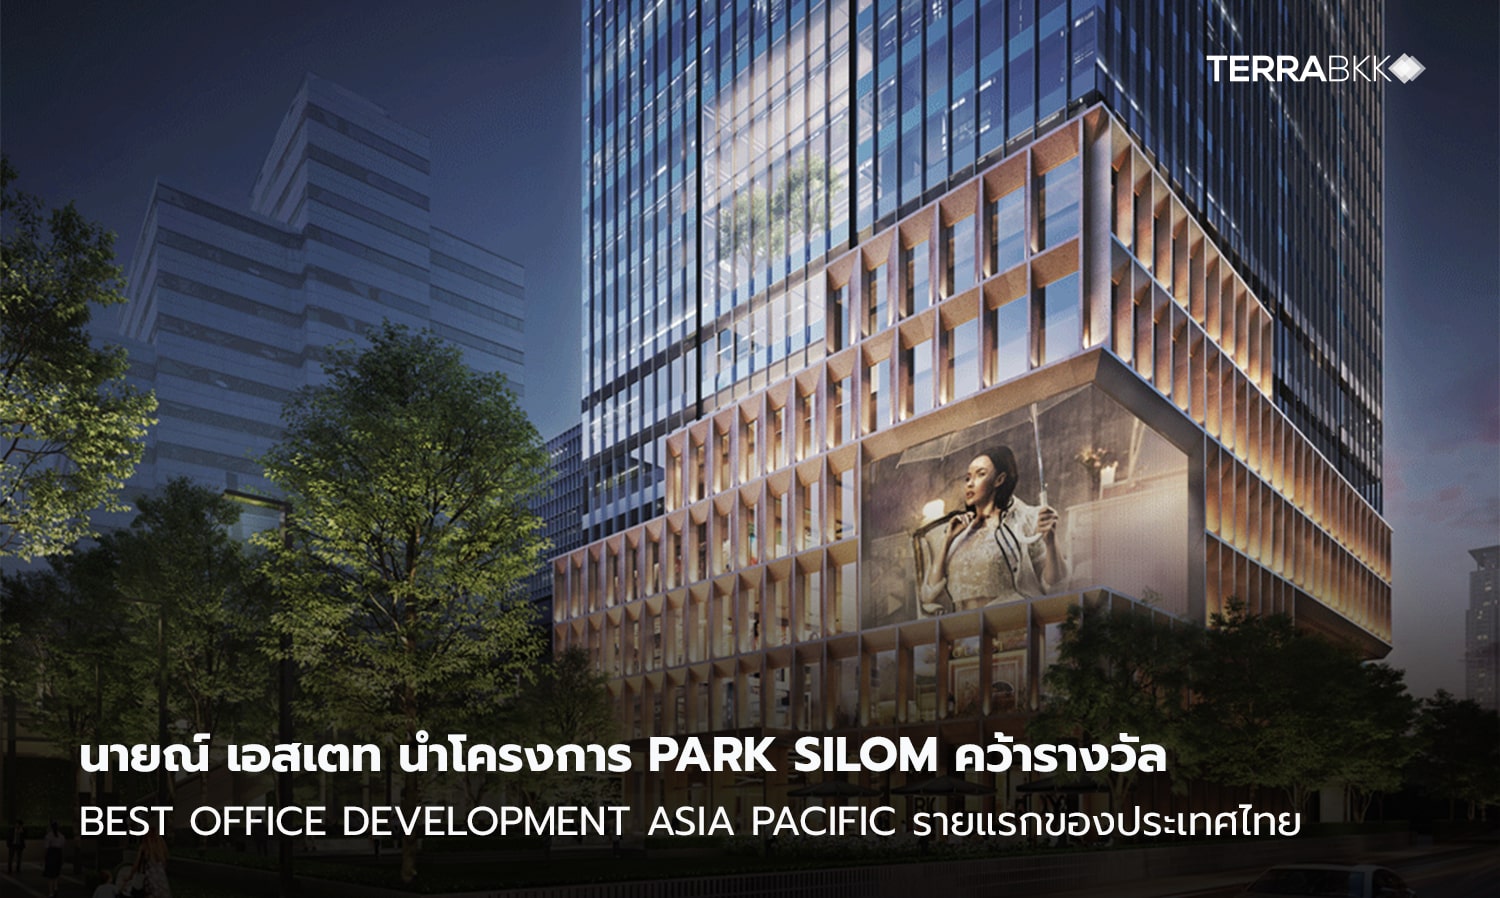 นายณ์ เอสเตท ตอกย้ำความเป็นผู้นำด้านการพัฒนาอาคารสำนักงานเกรด พรีเมียม นำโครงการ Park Silom คว้ารางวัล Best Office Development Asia Pacific รายแรกของประเทศไทย